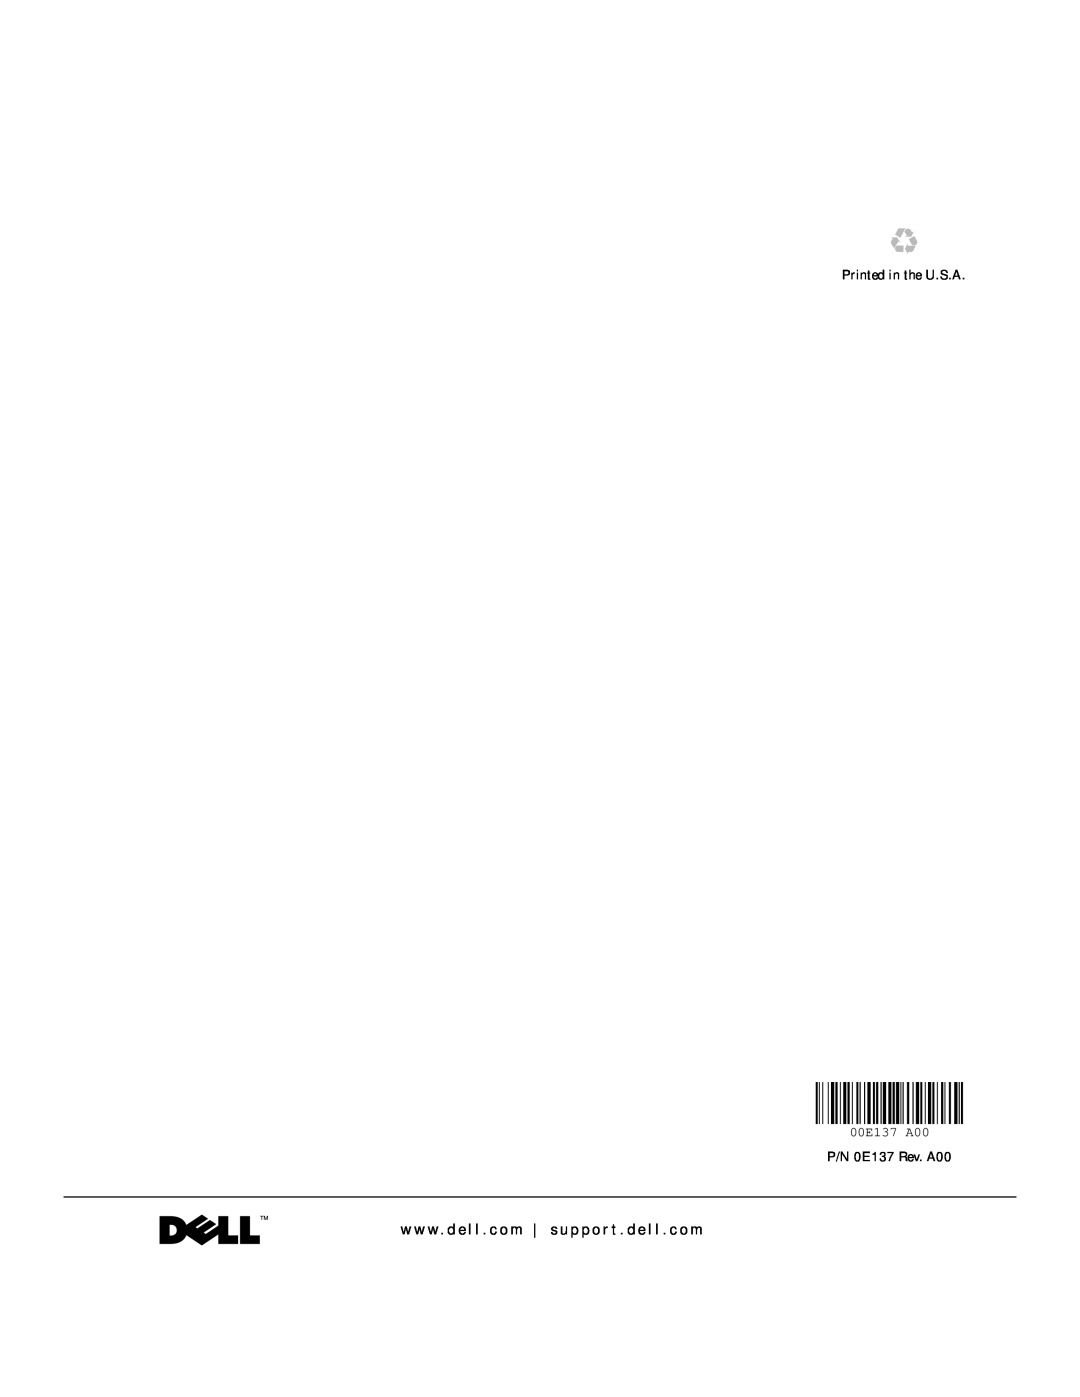 Dell 620 manual Printed in the U.S.A, P/N 0E137 Rev. A00, 00E137 A00 